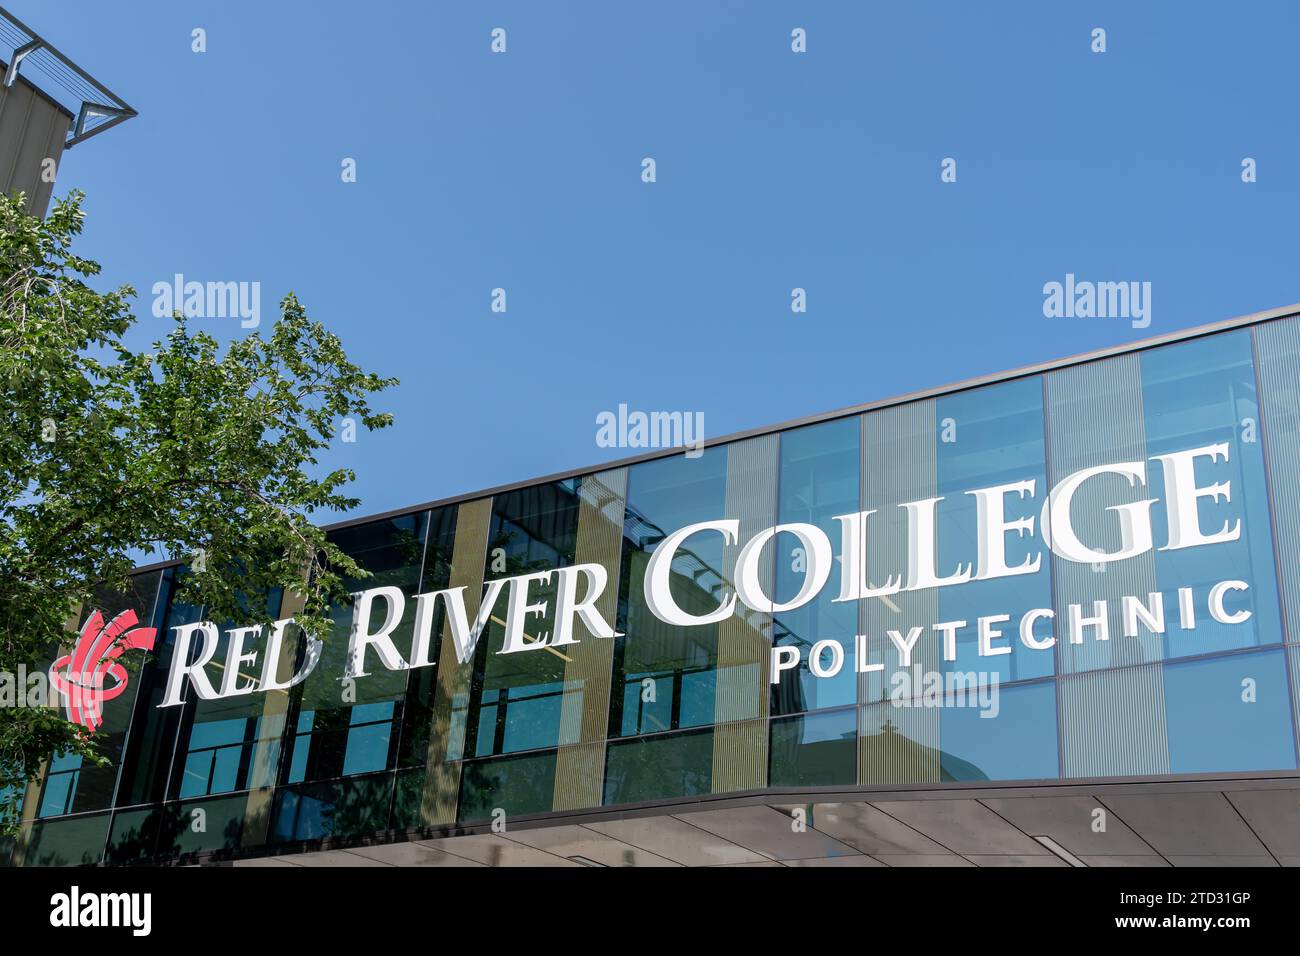 Red River College Politécnico en el edificio en Winnipeg, Manitoba, Canadá Foto de stock